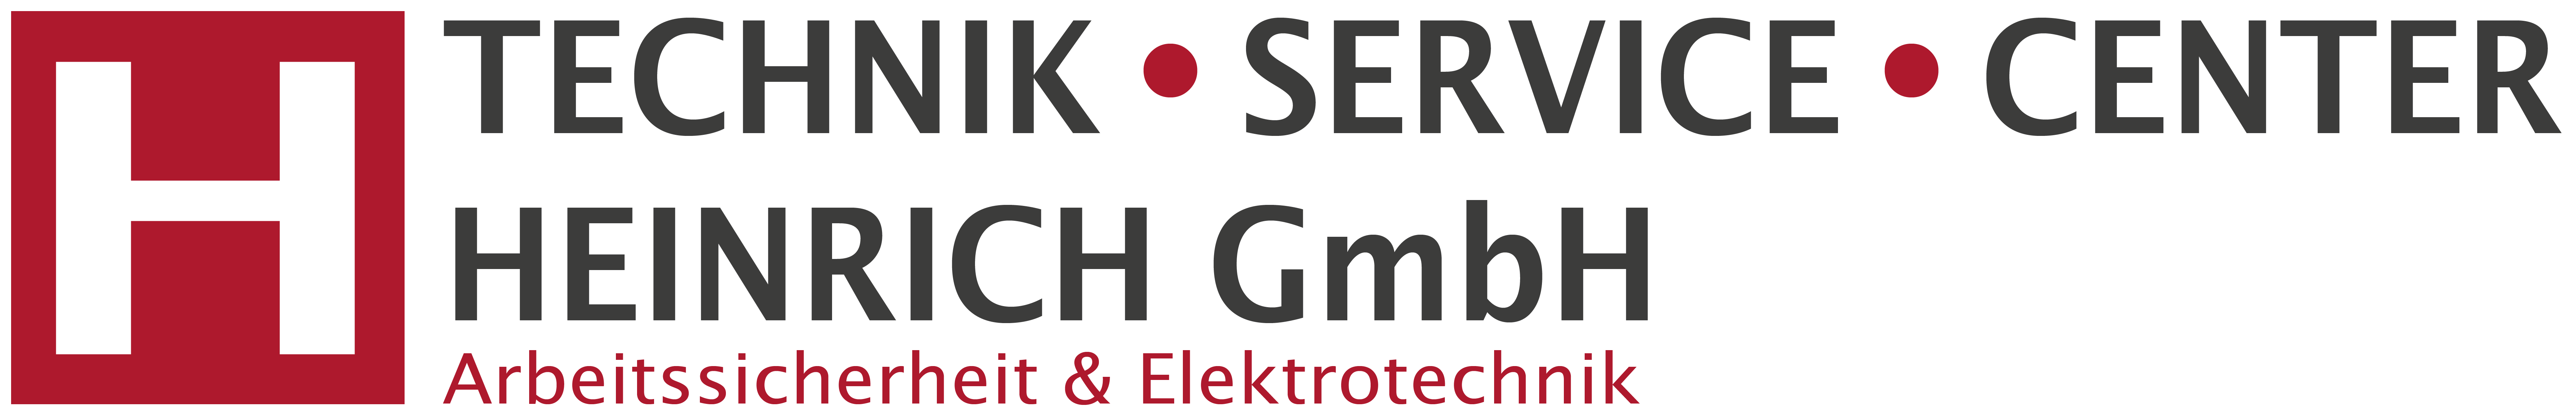 Technik-Service-Center Heinrich GmbH